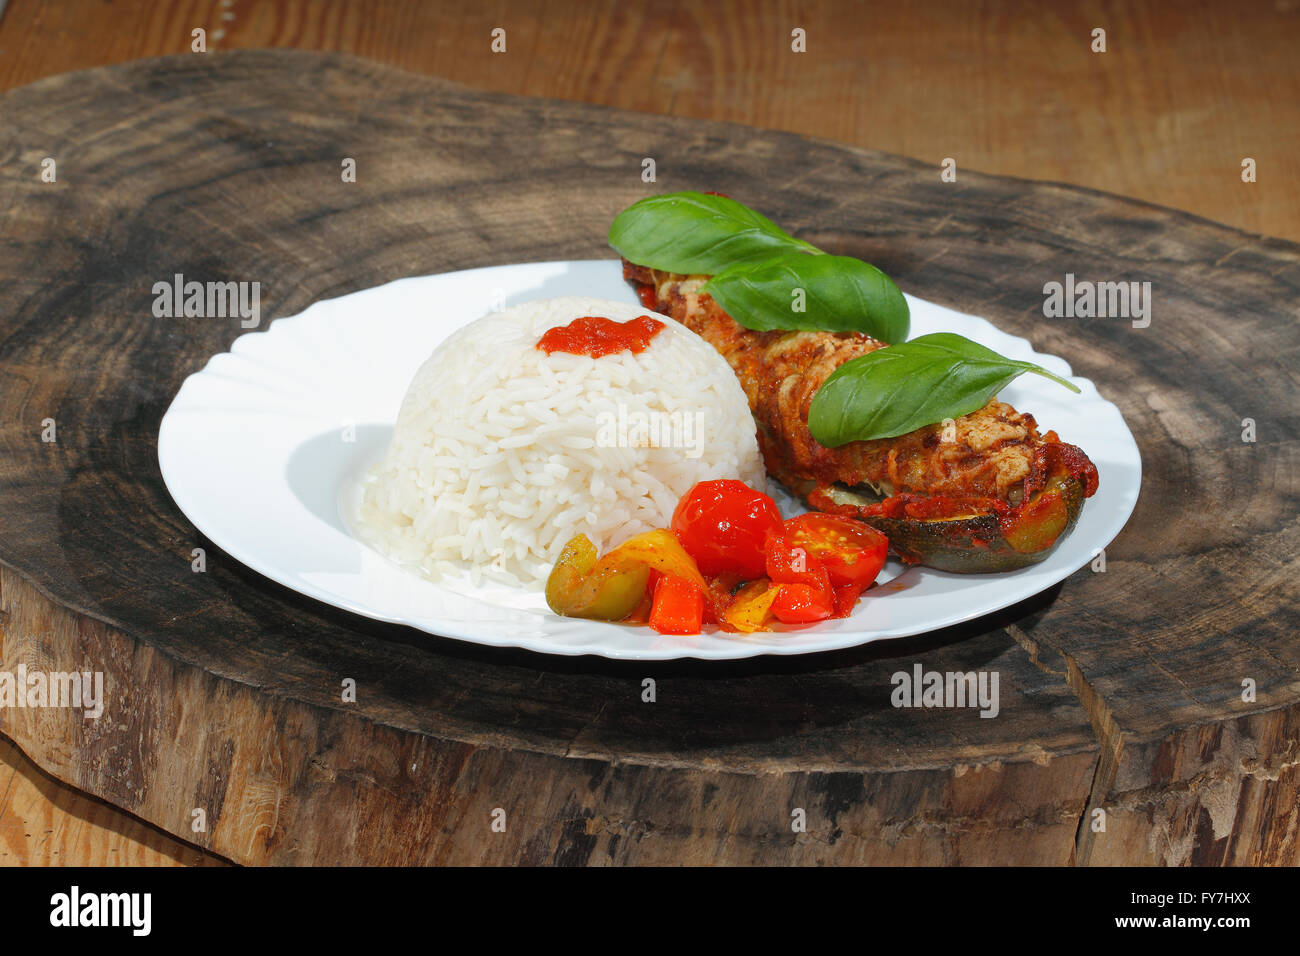 Courgette farcie, riz, compotée de poivrons et tomates, légumes, salade et décorer avec des feuilles de basilic sur une plaque Banque D'Images